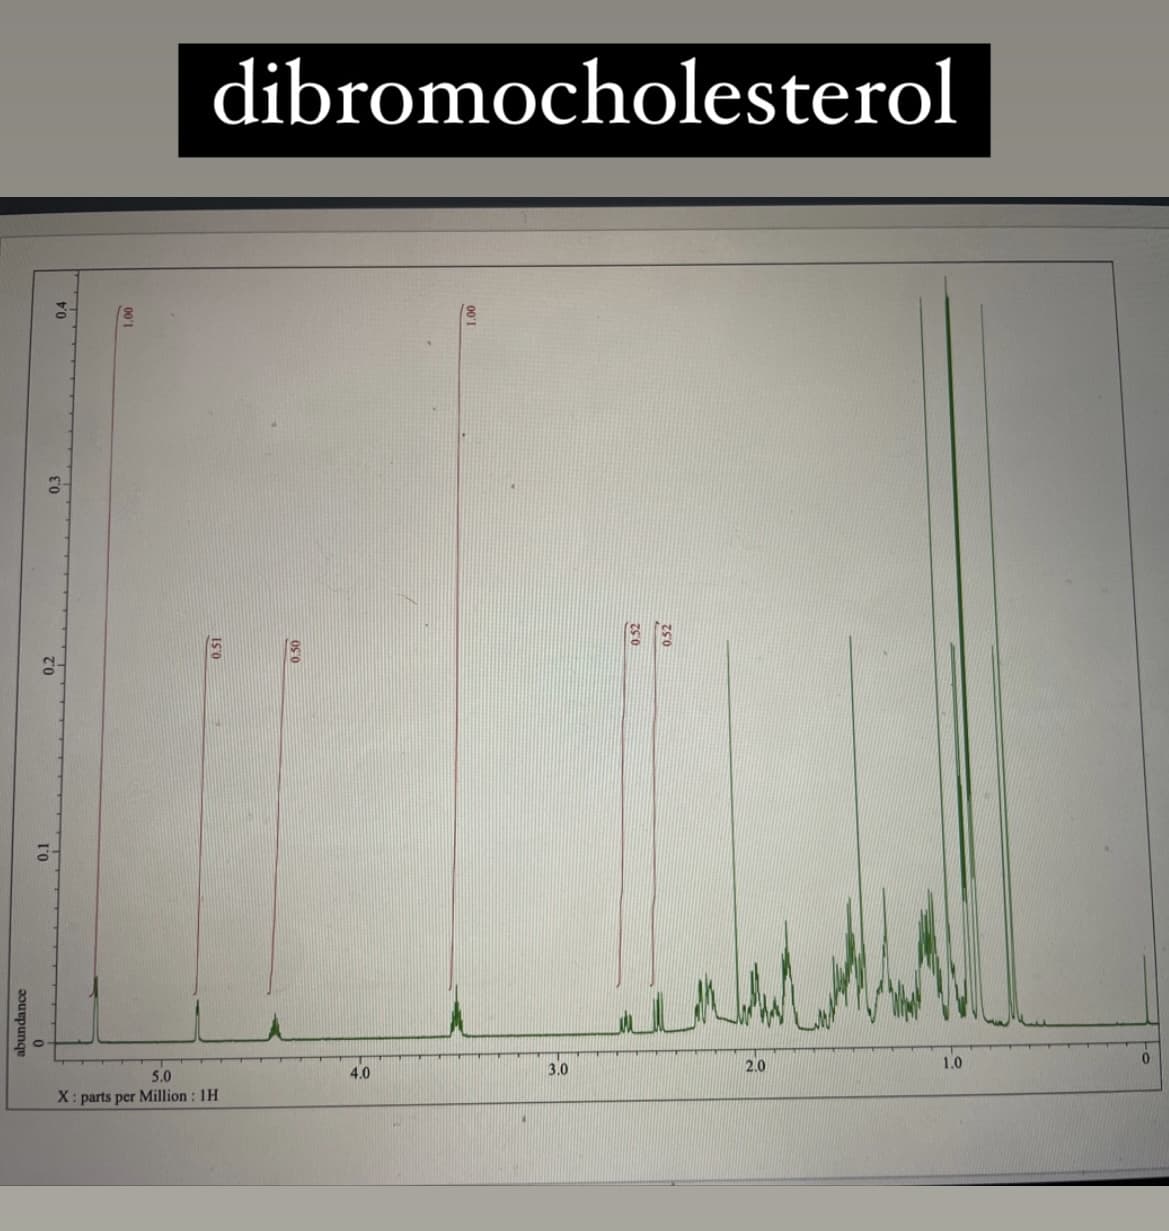 abundance
0.4
1.00
dibromocholesterol
0.51
5.0
X: parts per Million: 1H
0.50
4.0
3.0
0.52
0.52
2.0
1.0
0